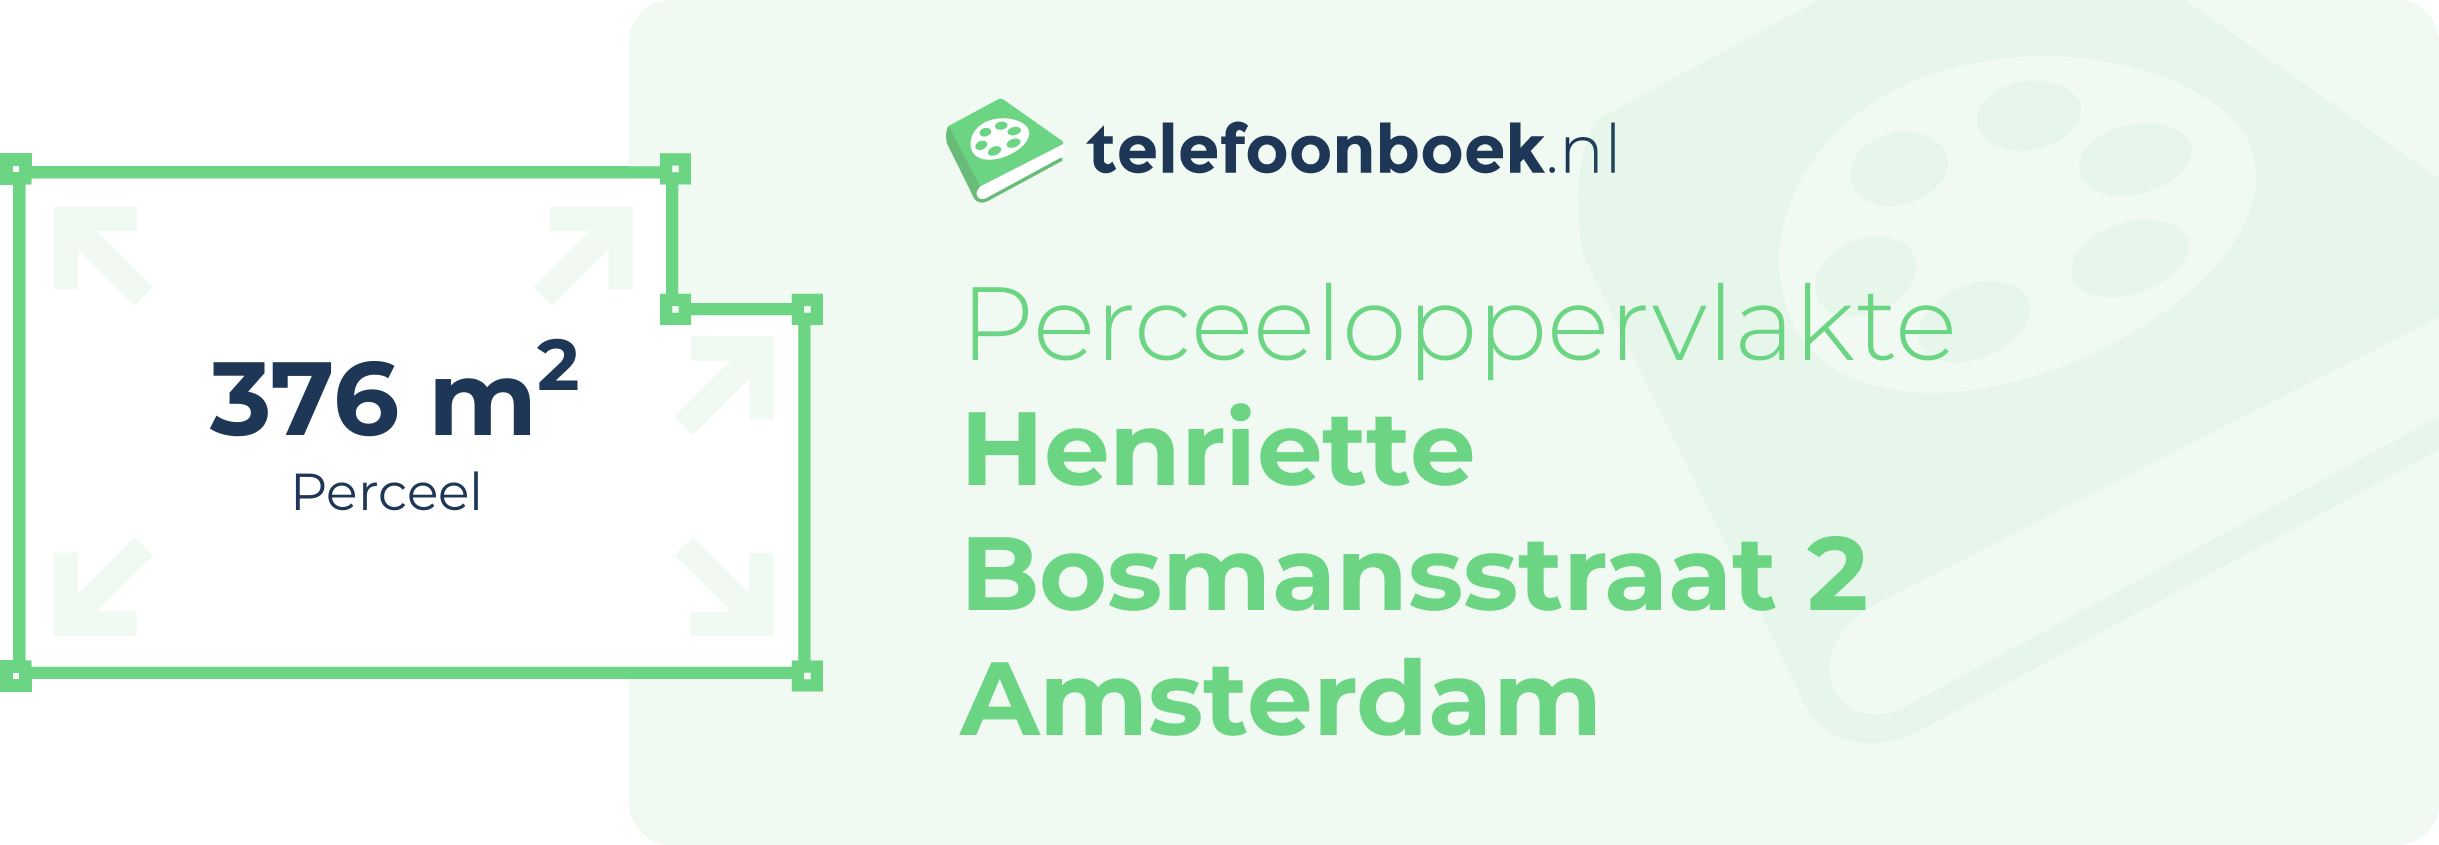 Perceeloppervlakte Henriette Bosmansstraat 2 Amsterdam